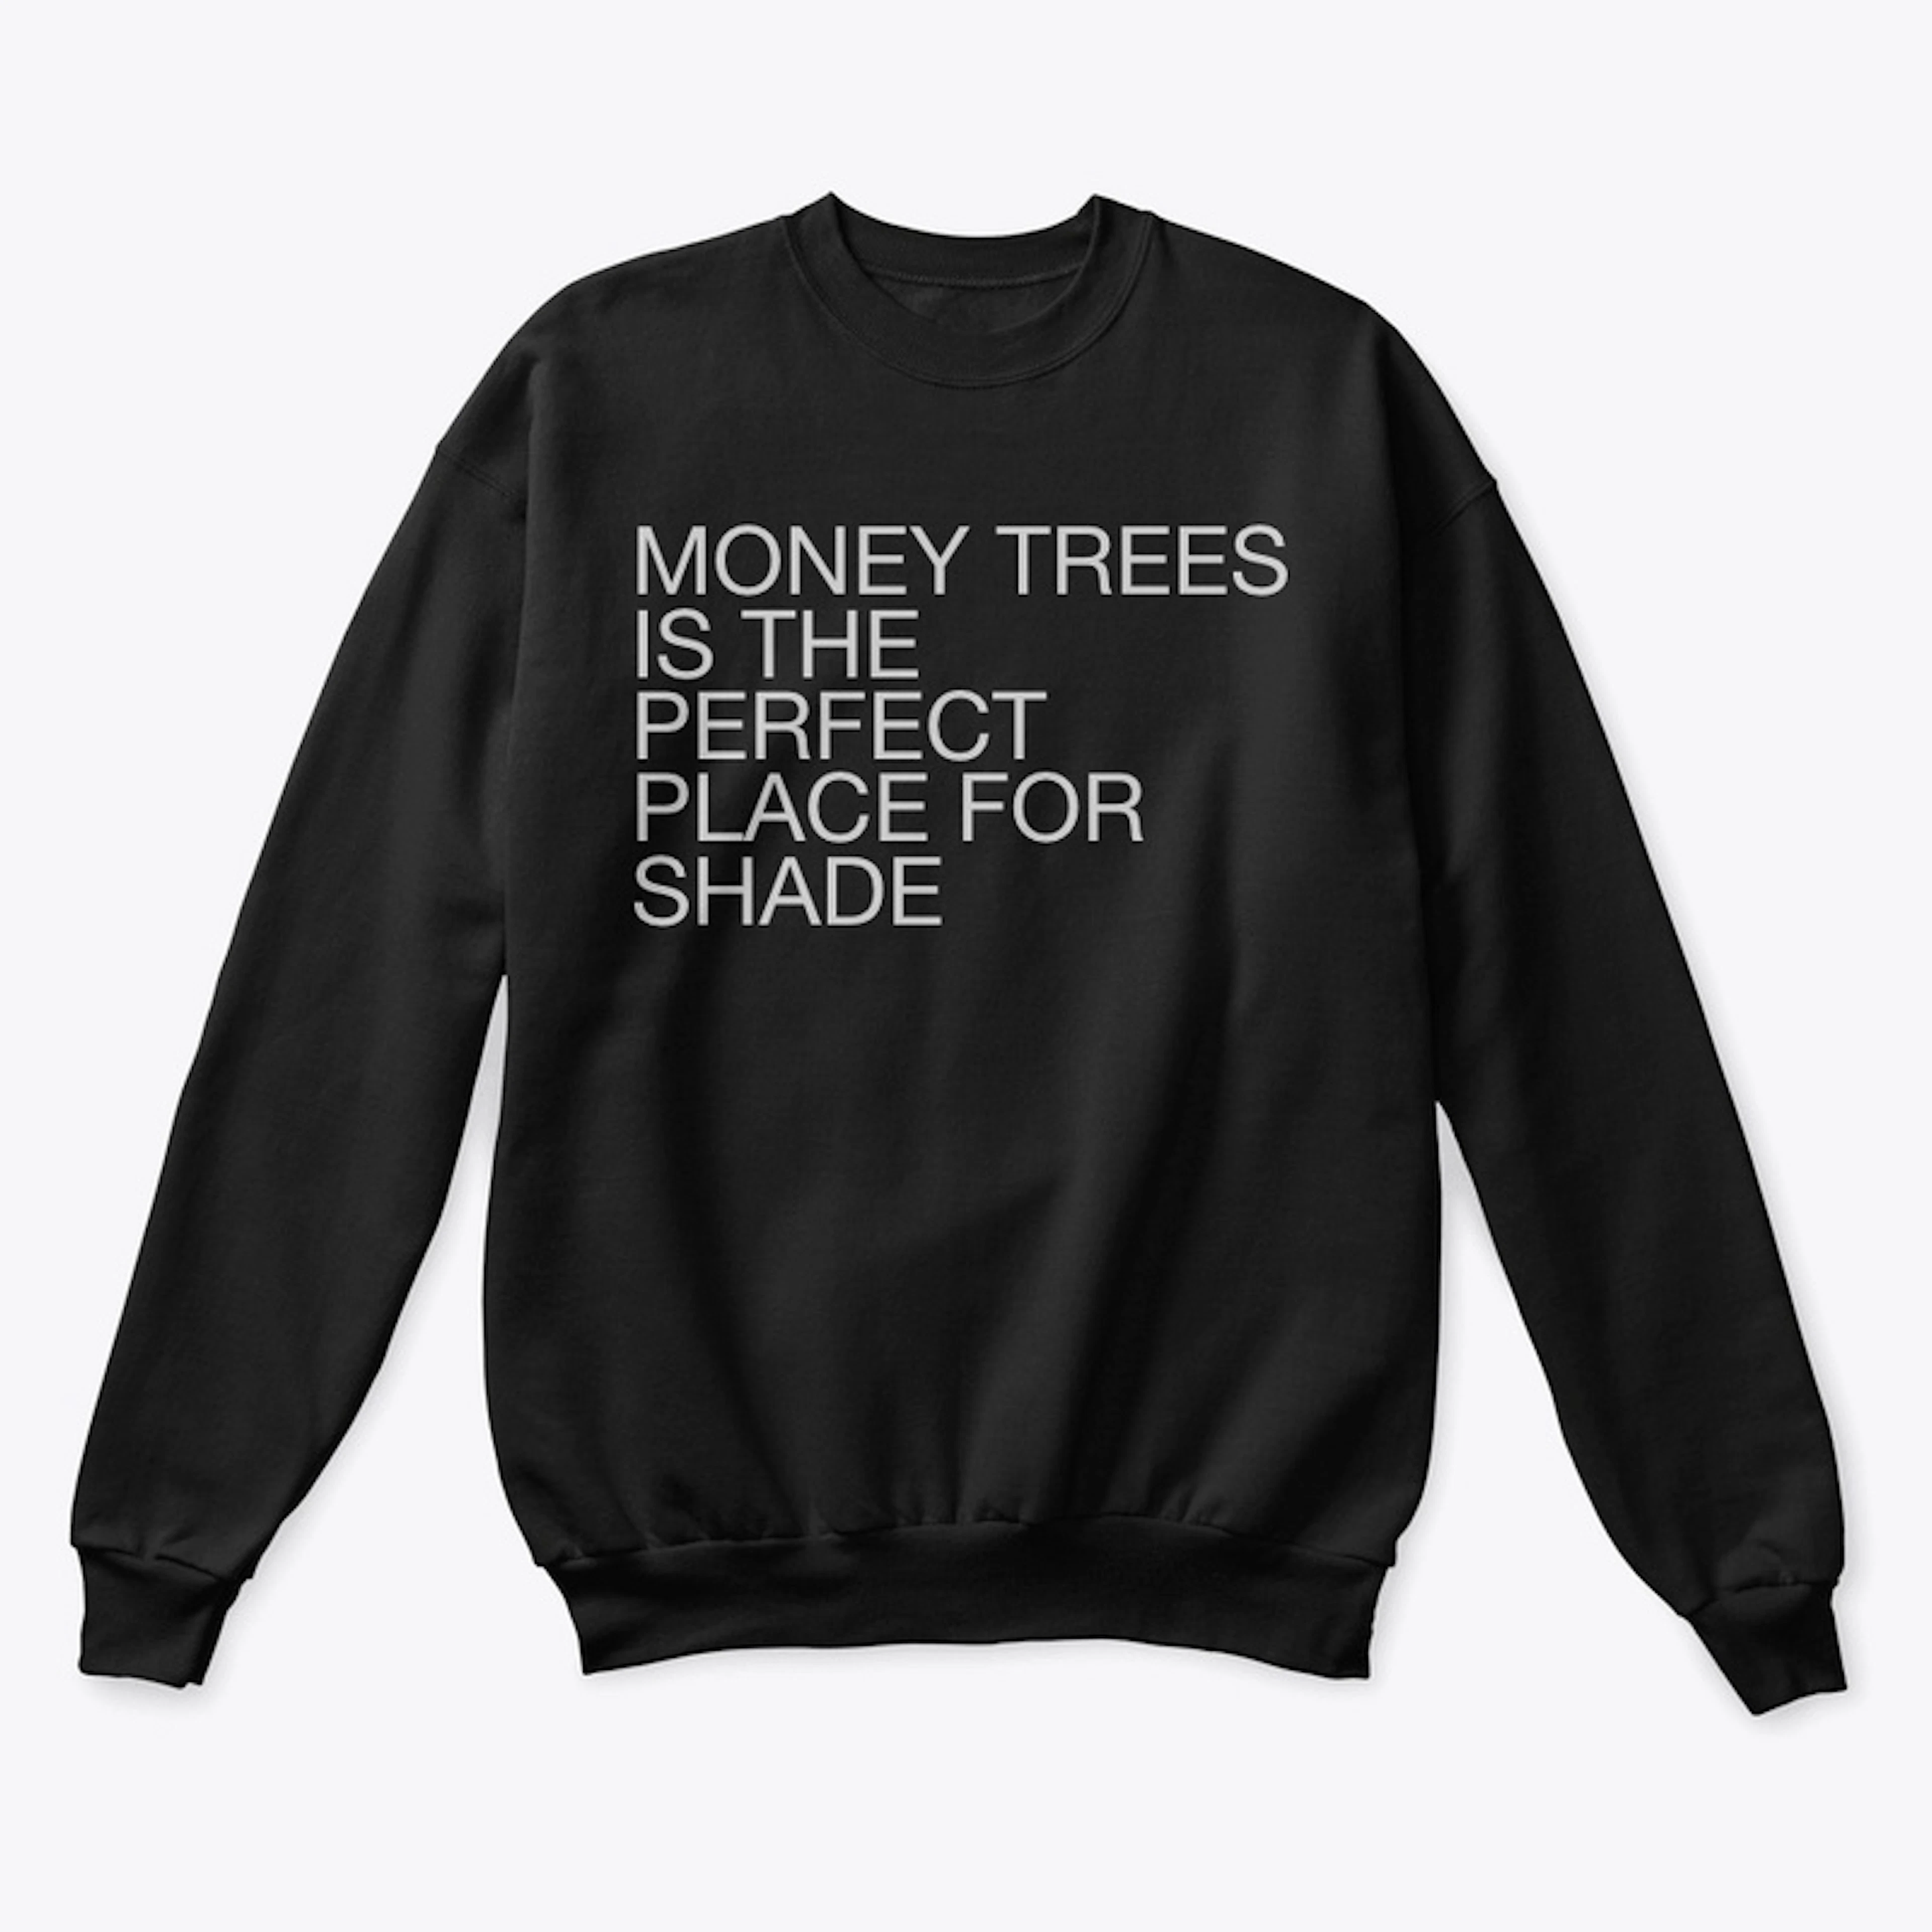 MONEY TREES